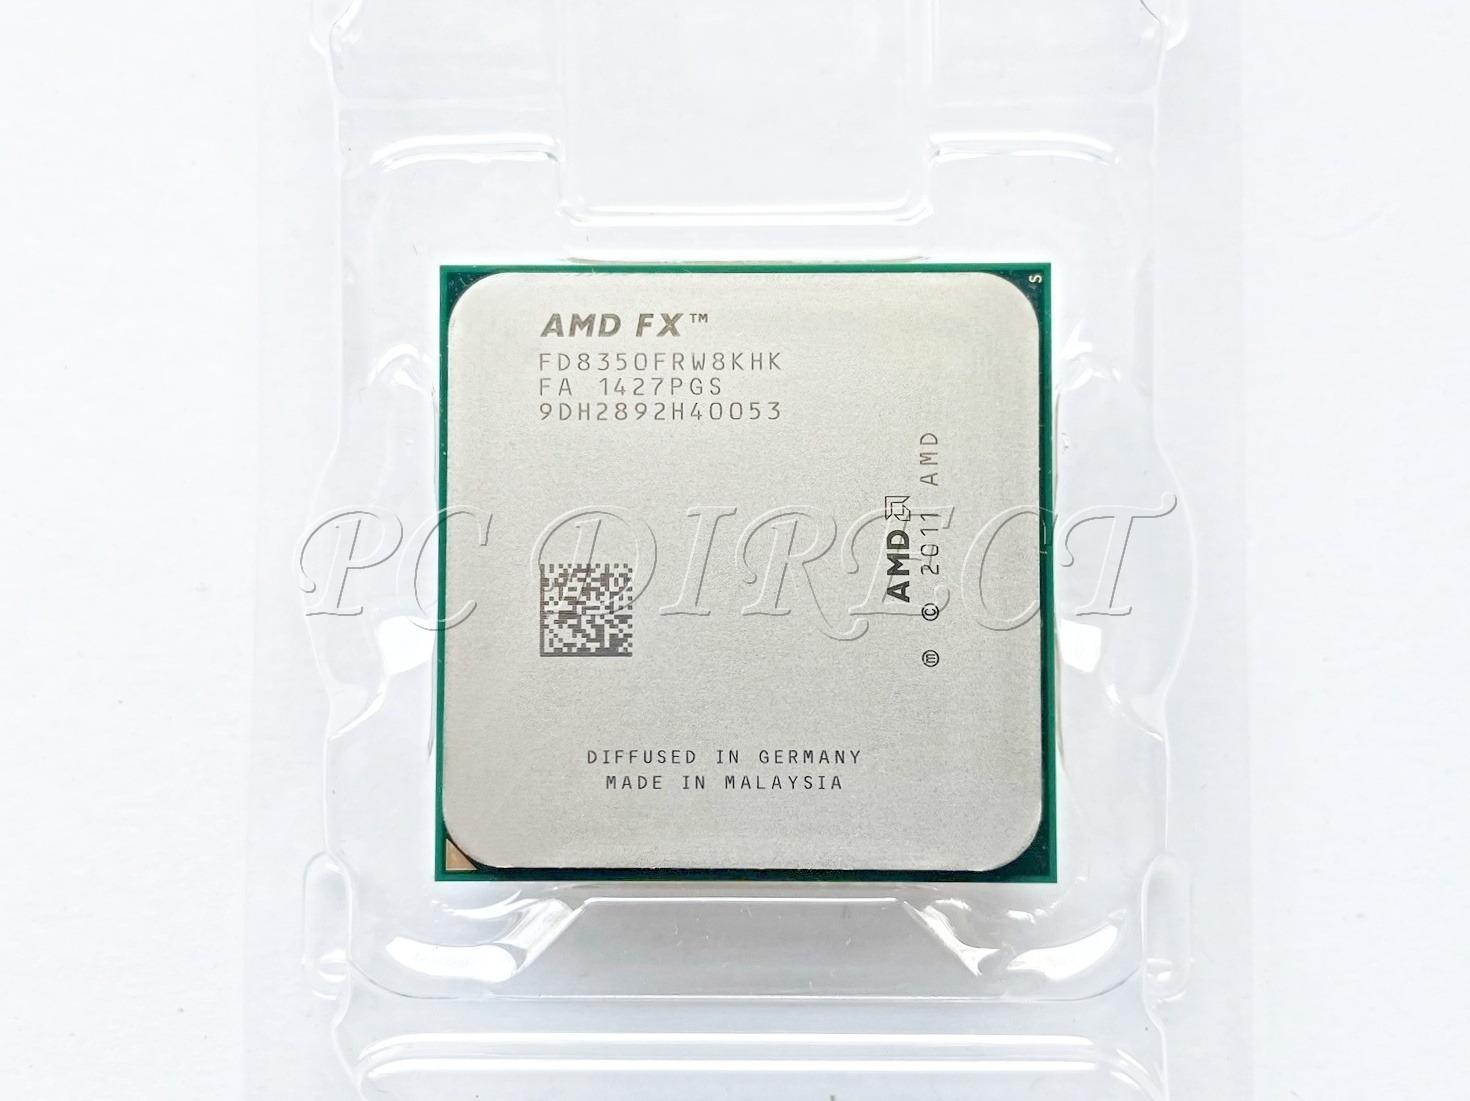 Procesor AMD FX-8350 - 8C/8T - až 4,2 GHz - Socket AM3+ - Počítače a hry